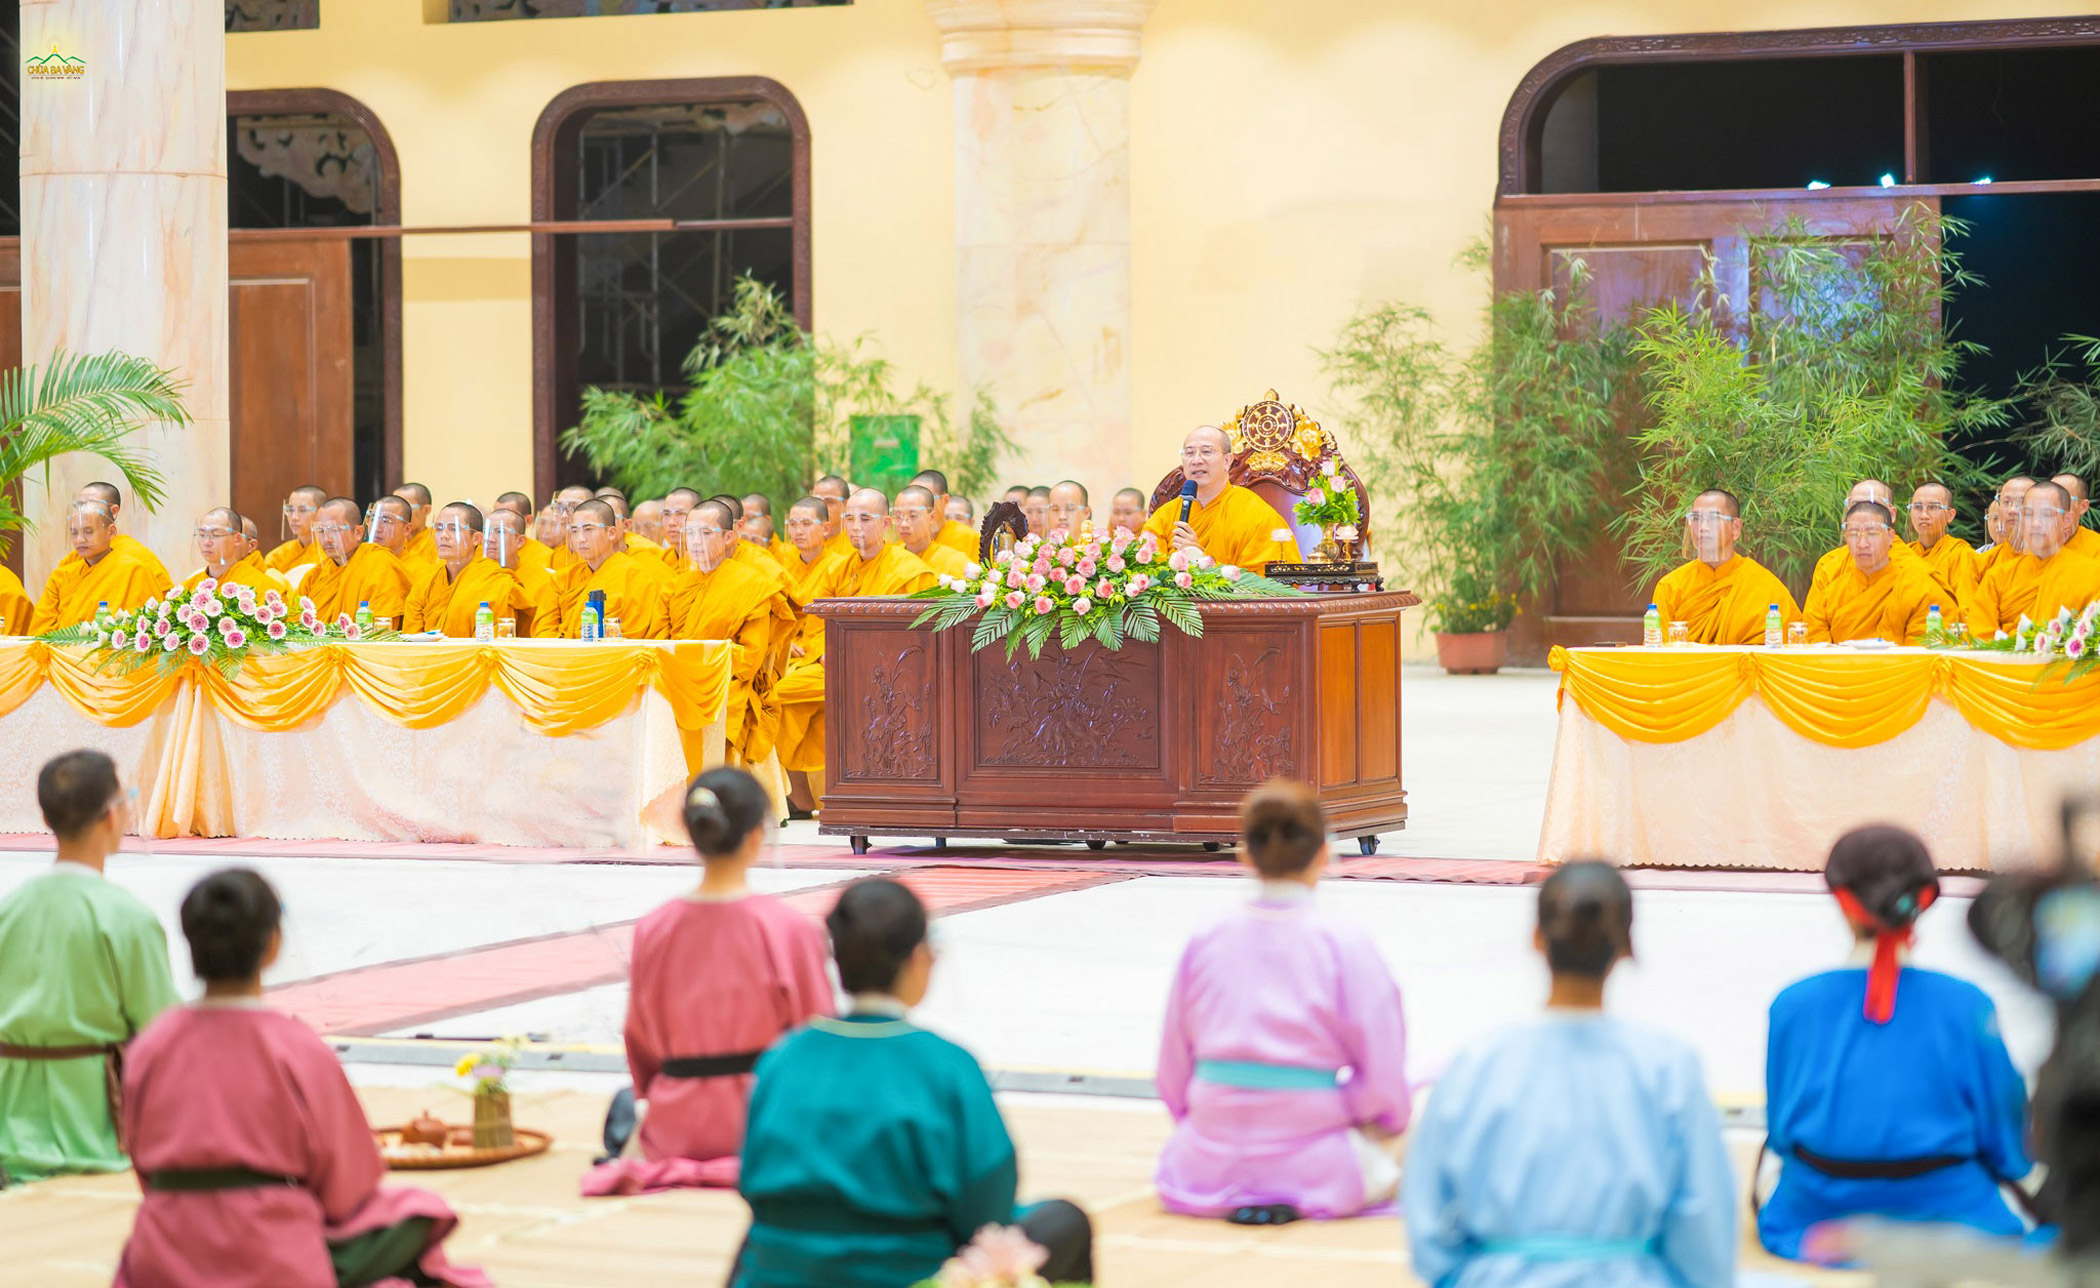   Sư Phụ từ bi ban bố những lời đạo từ ý nghĩa tới toàn thể đại chúng, giúp hàng hậu học ôn lại những điều đặc biệt trong cuộc đời của Đức Phật hoàng và tri ân tới sự giáng sinh của Ngài  